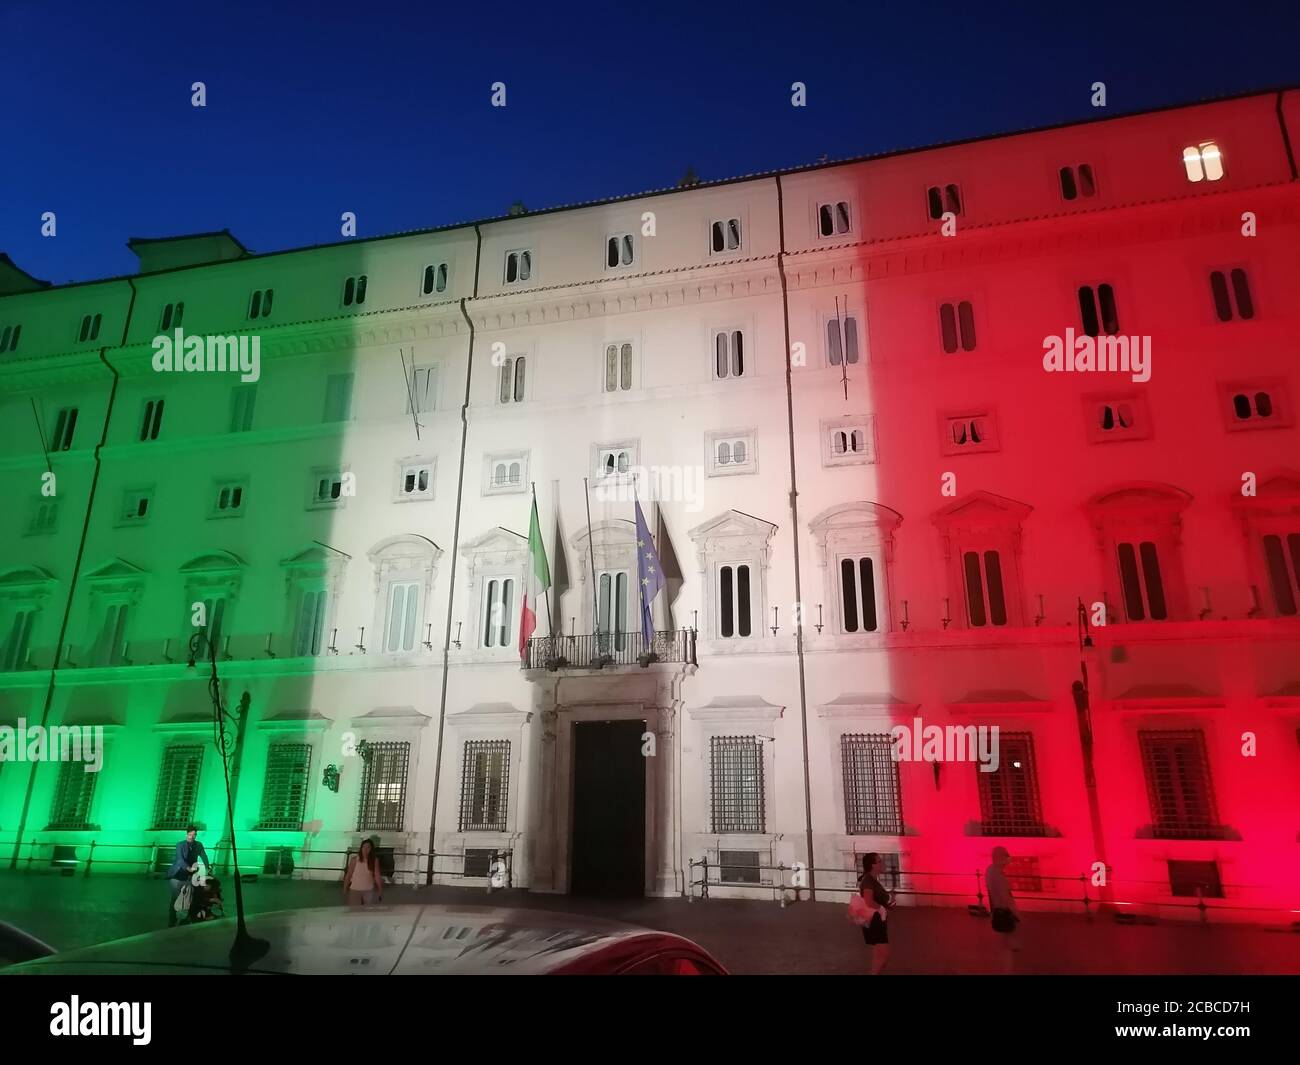 Roma, Italia - 12 agosto 2020:  Emergenza Coronavirus in Italia, Palazzo Chigi, sede del governo italiano, illuminata con i colori della bandiera italiana Stock Photo